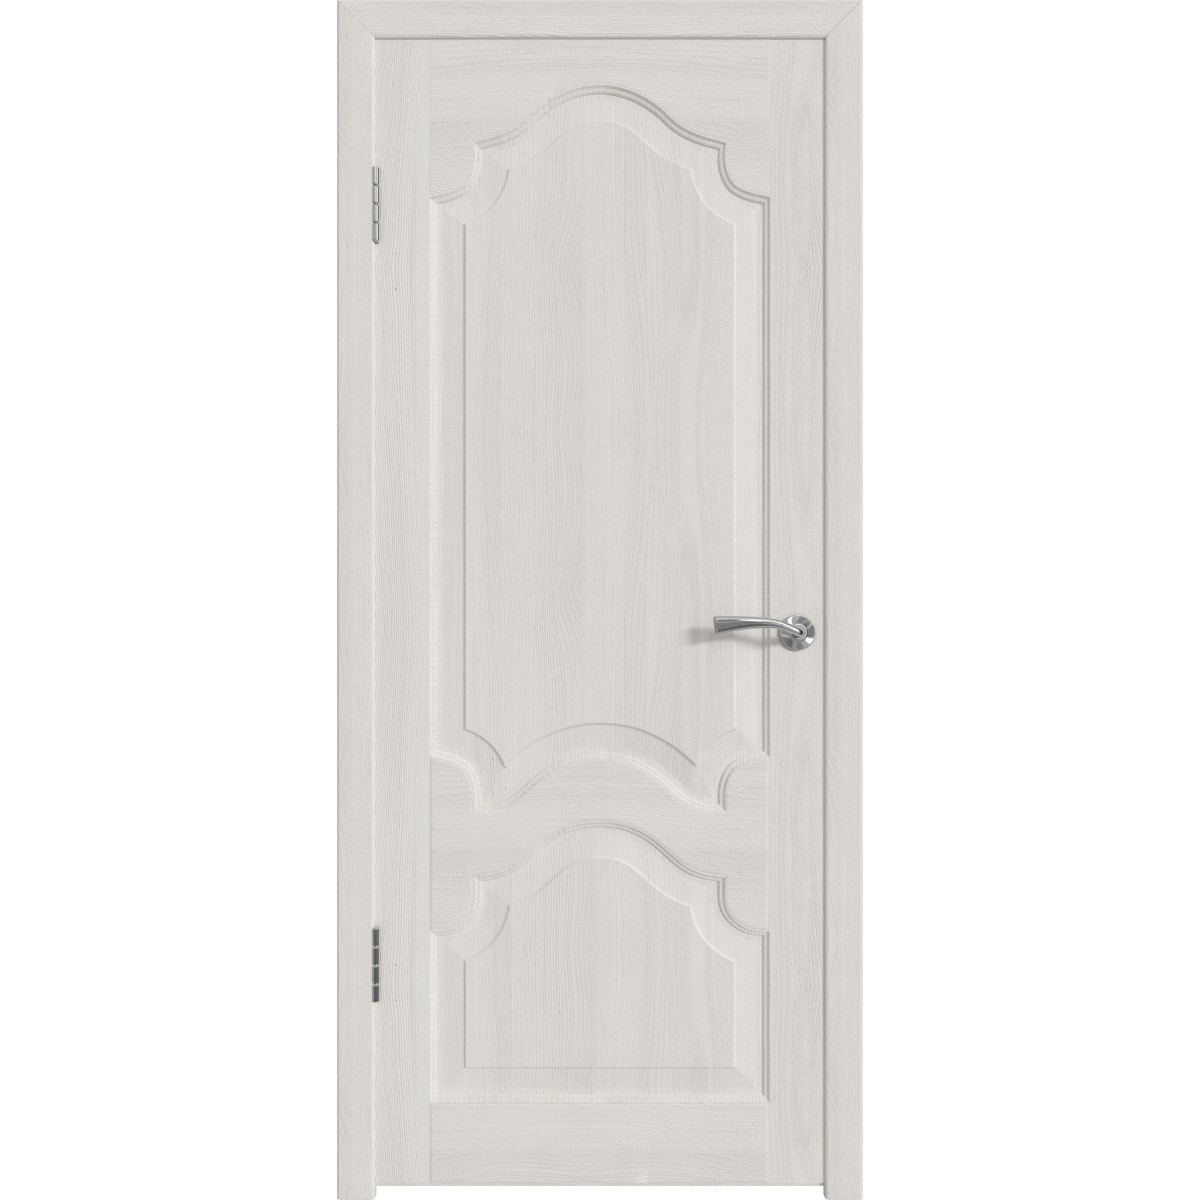 Дверь межкомнатная глухая с замком и петлями в комплекте Венеция 90x200 см ПП цвет белёный дуб